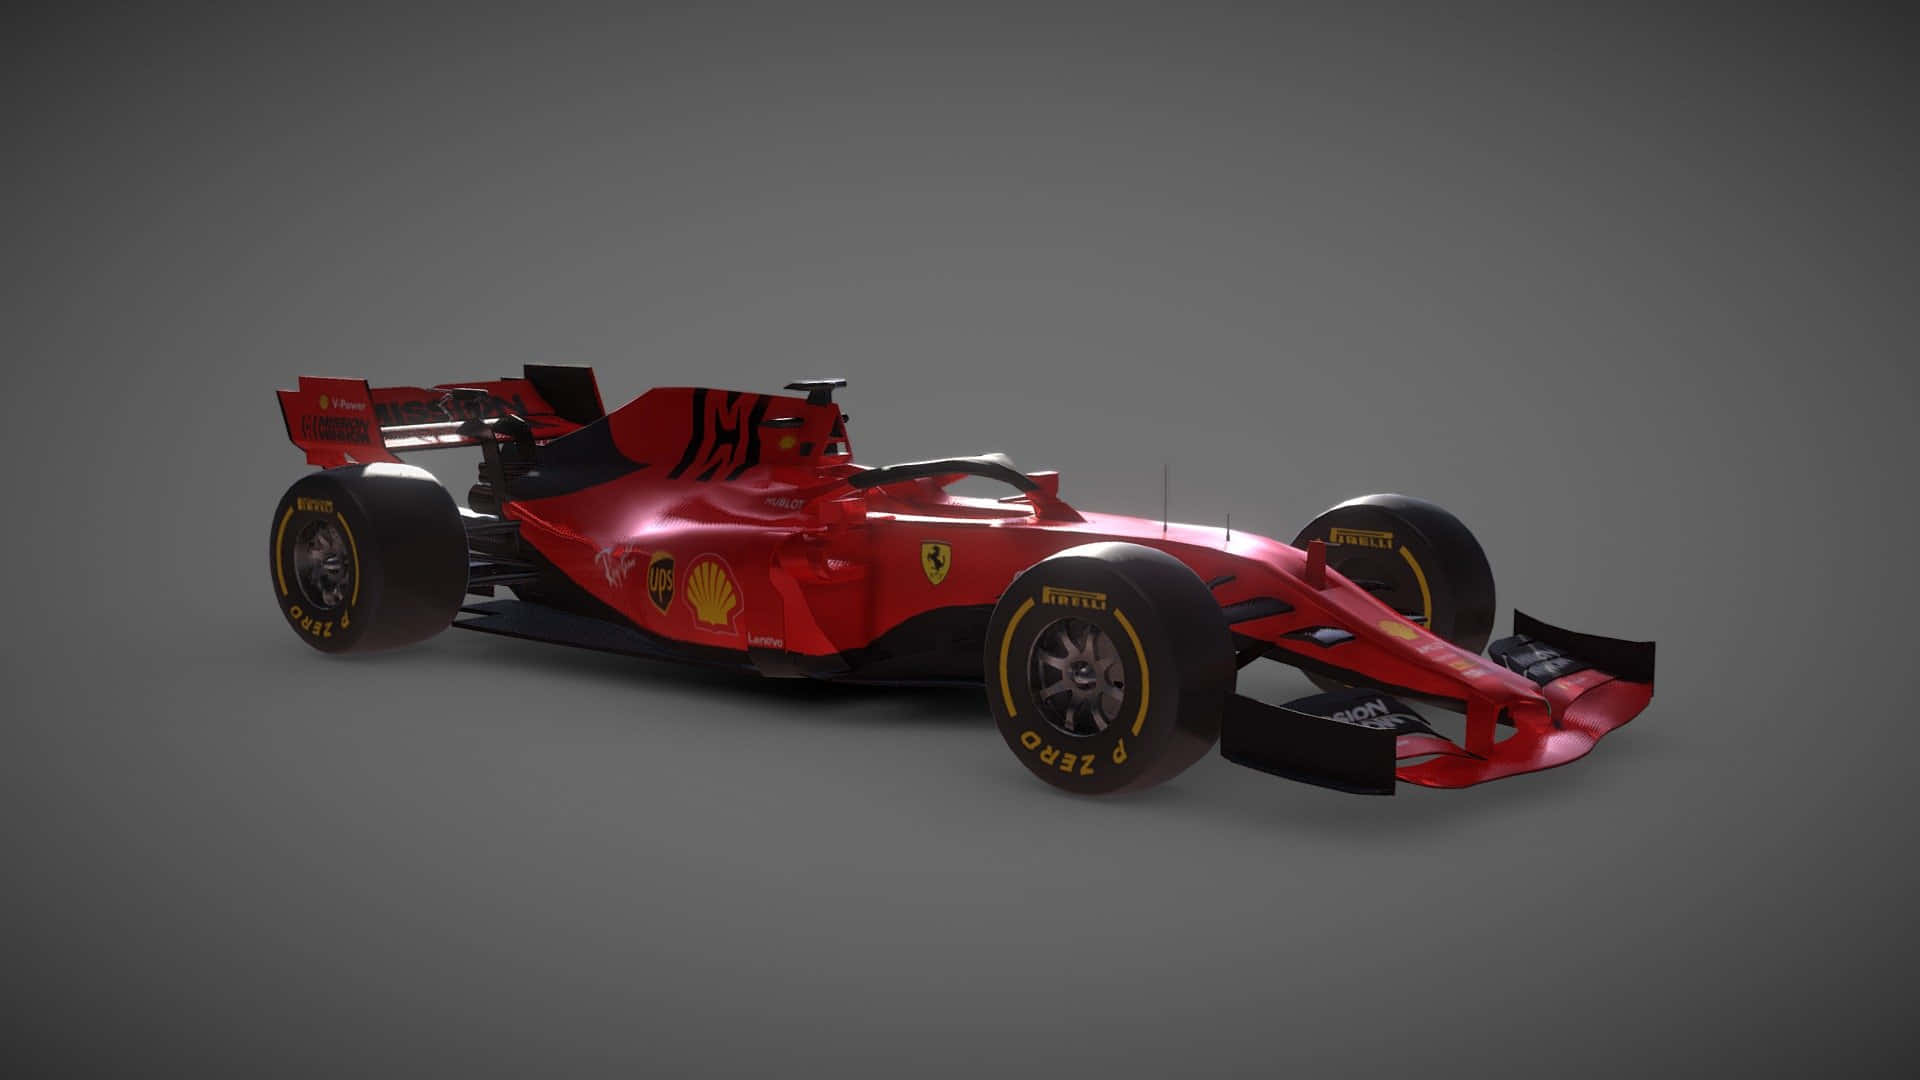 Fondode Pantalla Hd En Escala De Grises Del Ferrari Fr1 2019